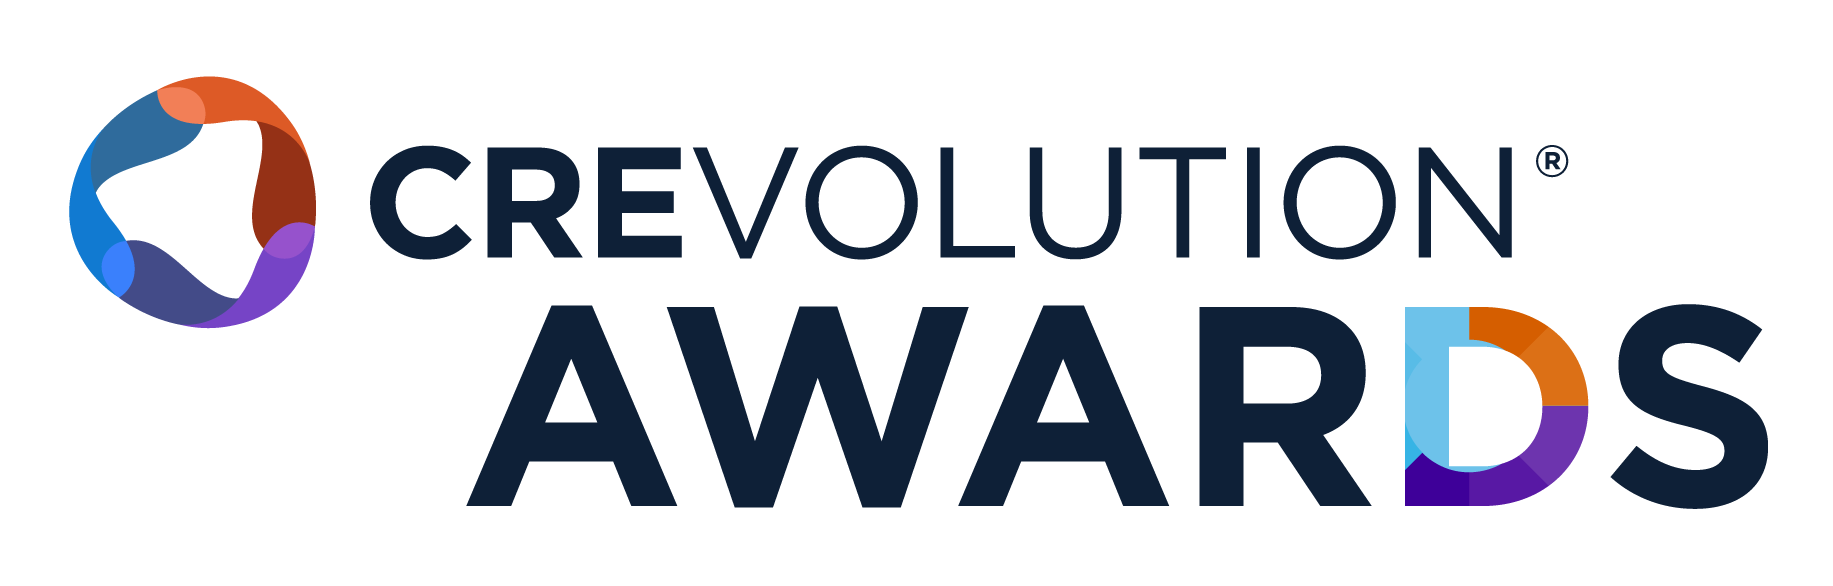 Crevolution Awards